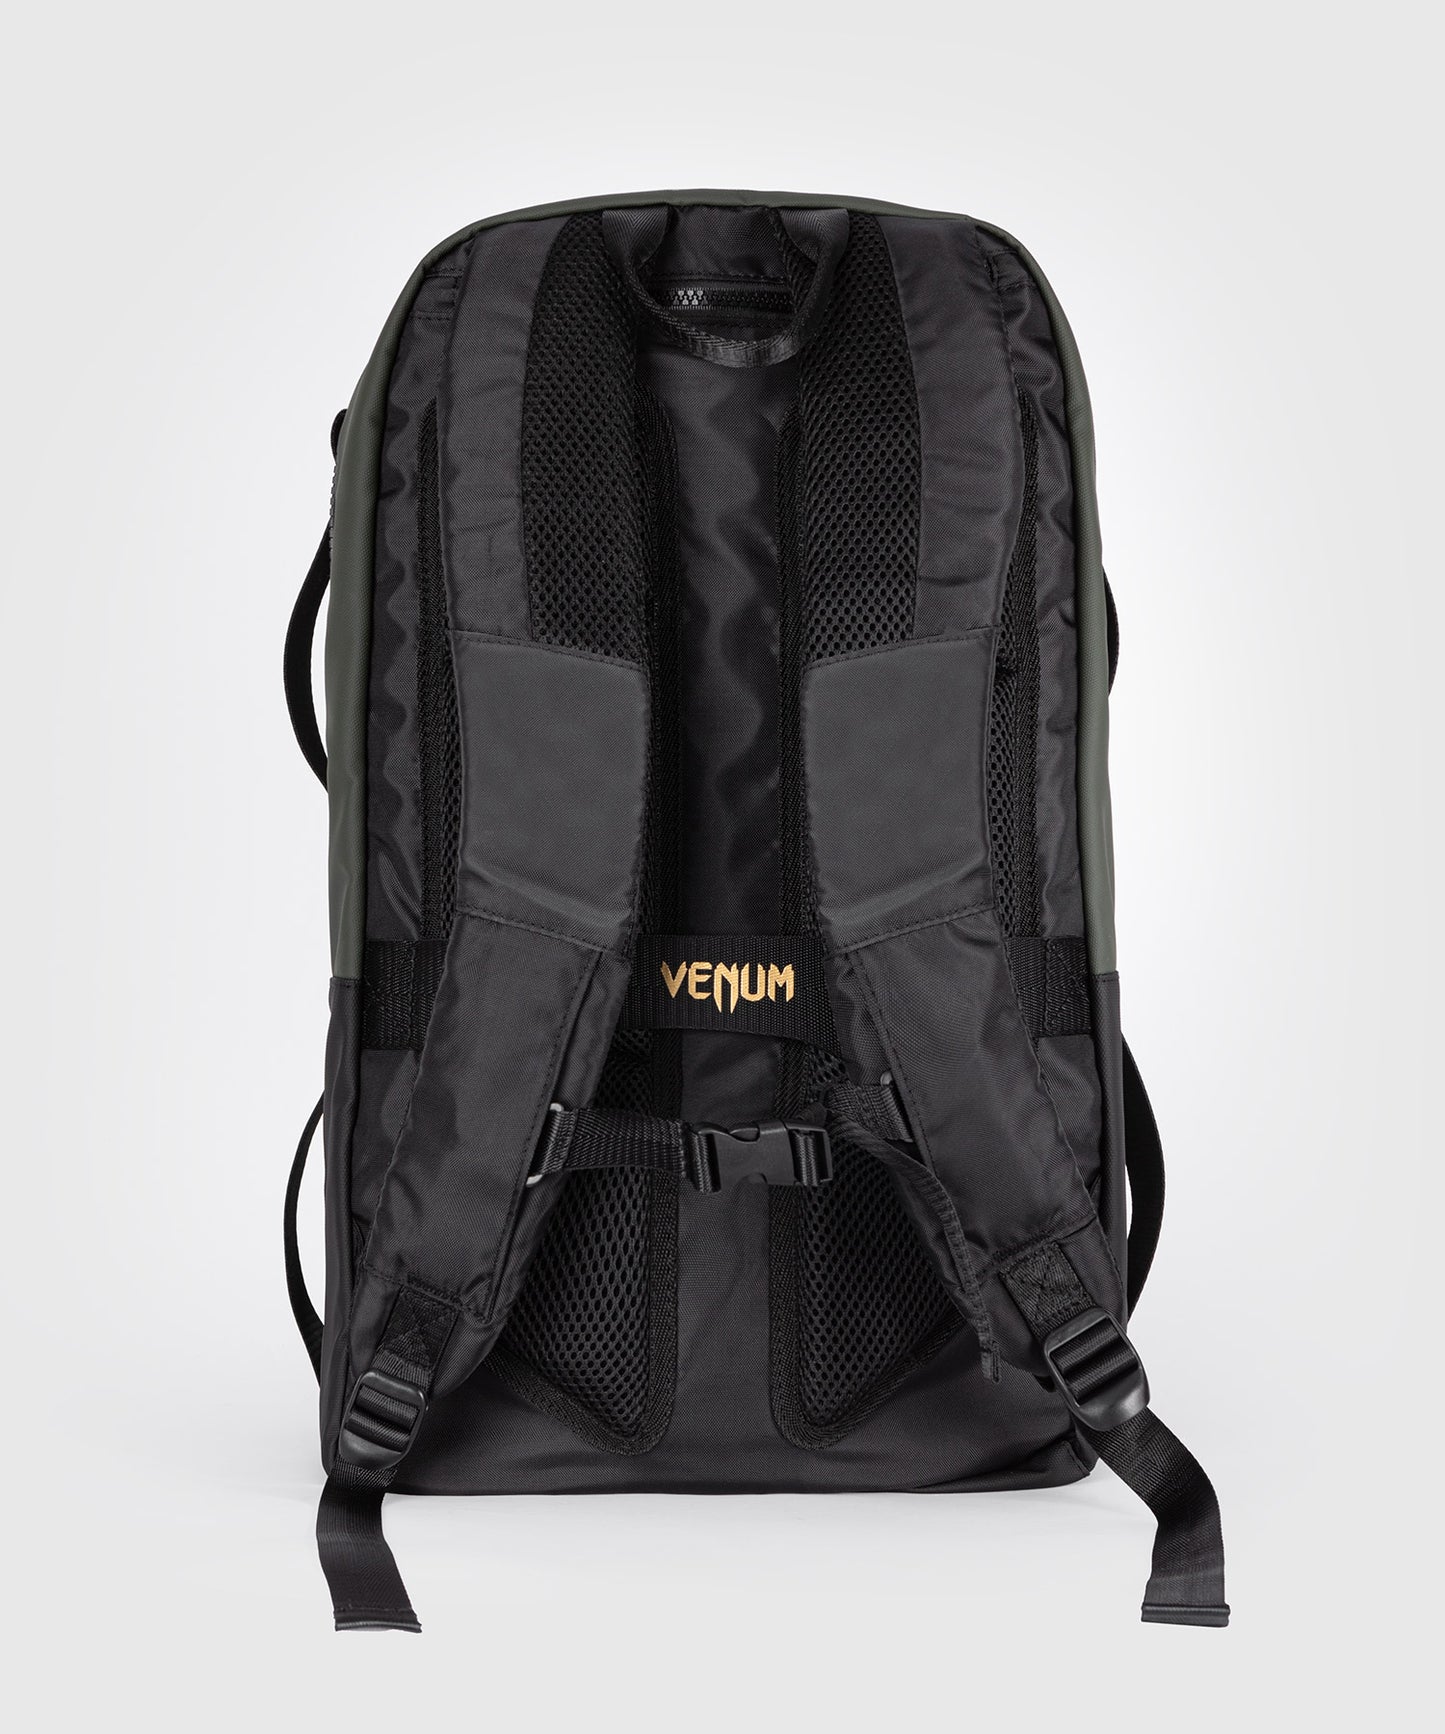 Venum Evo 2 Backpack - Black/Khaki